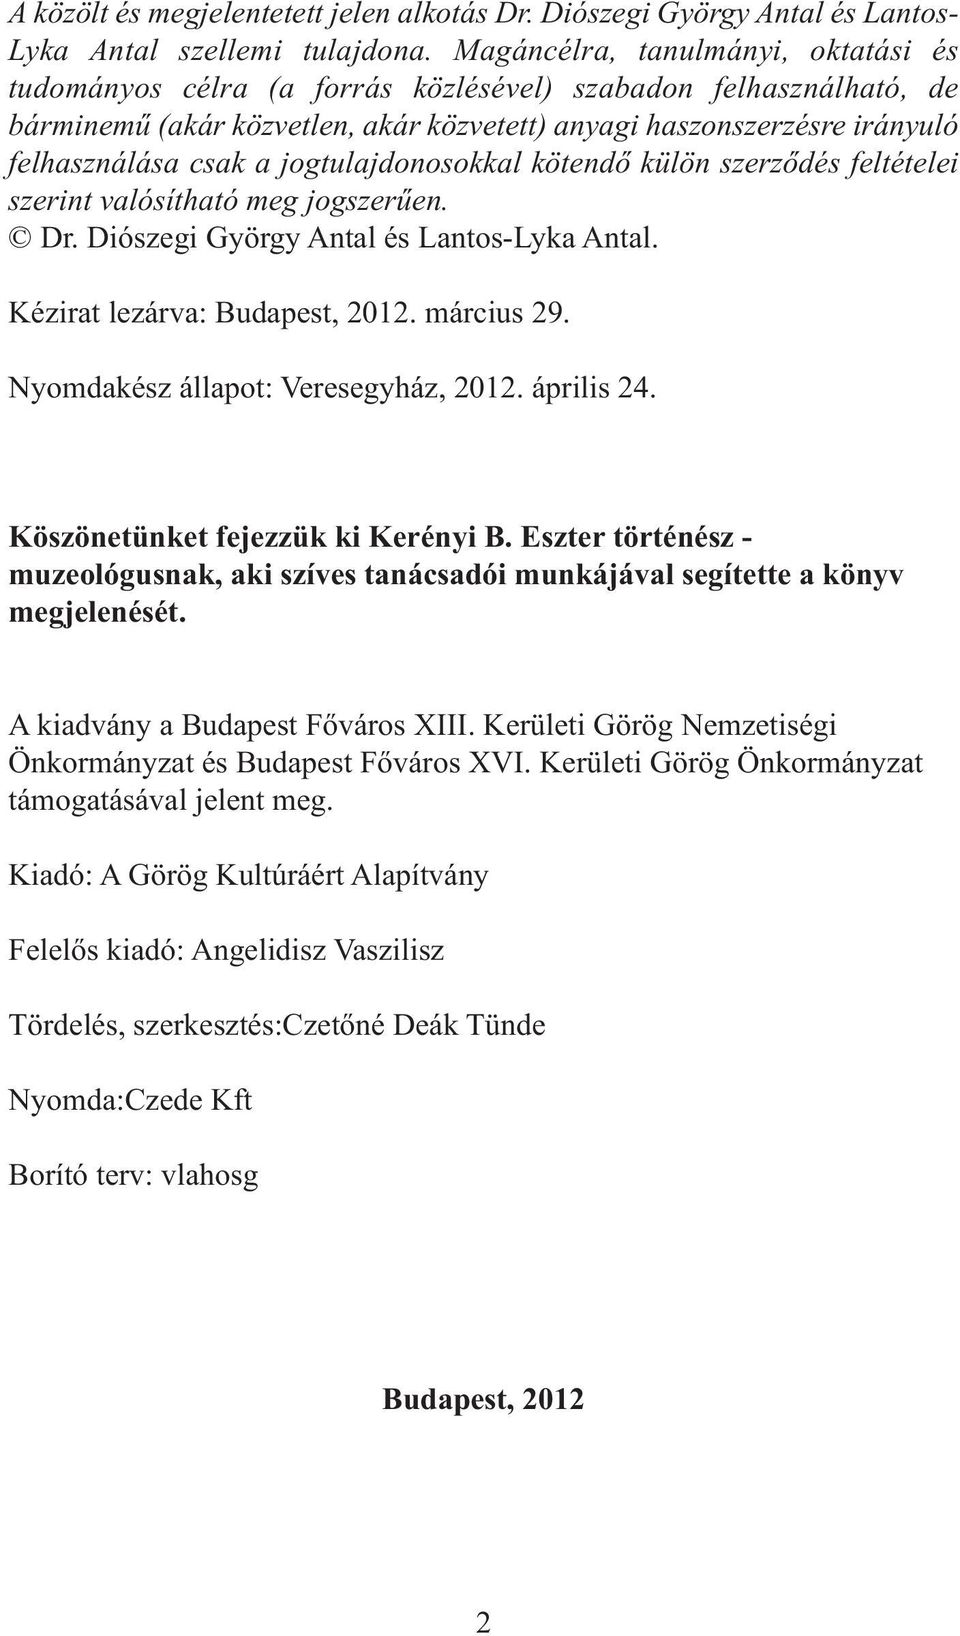 jogtulajdonosokkal kötendő külön szerződés feltételei szerint valósítható meg jogszerűen. Dr. Diószegi György Antal és Lantos-Lyka Antal. Kézirat lezárva: Budapest, 2012. március 29.